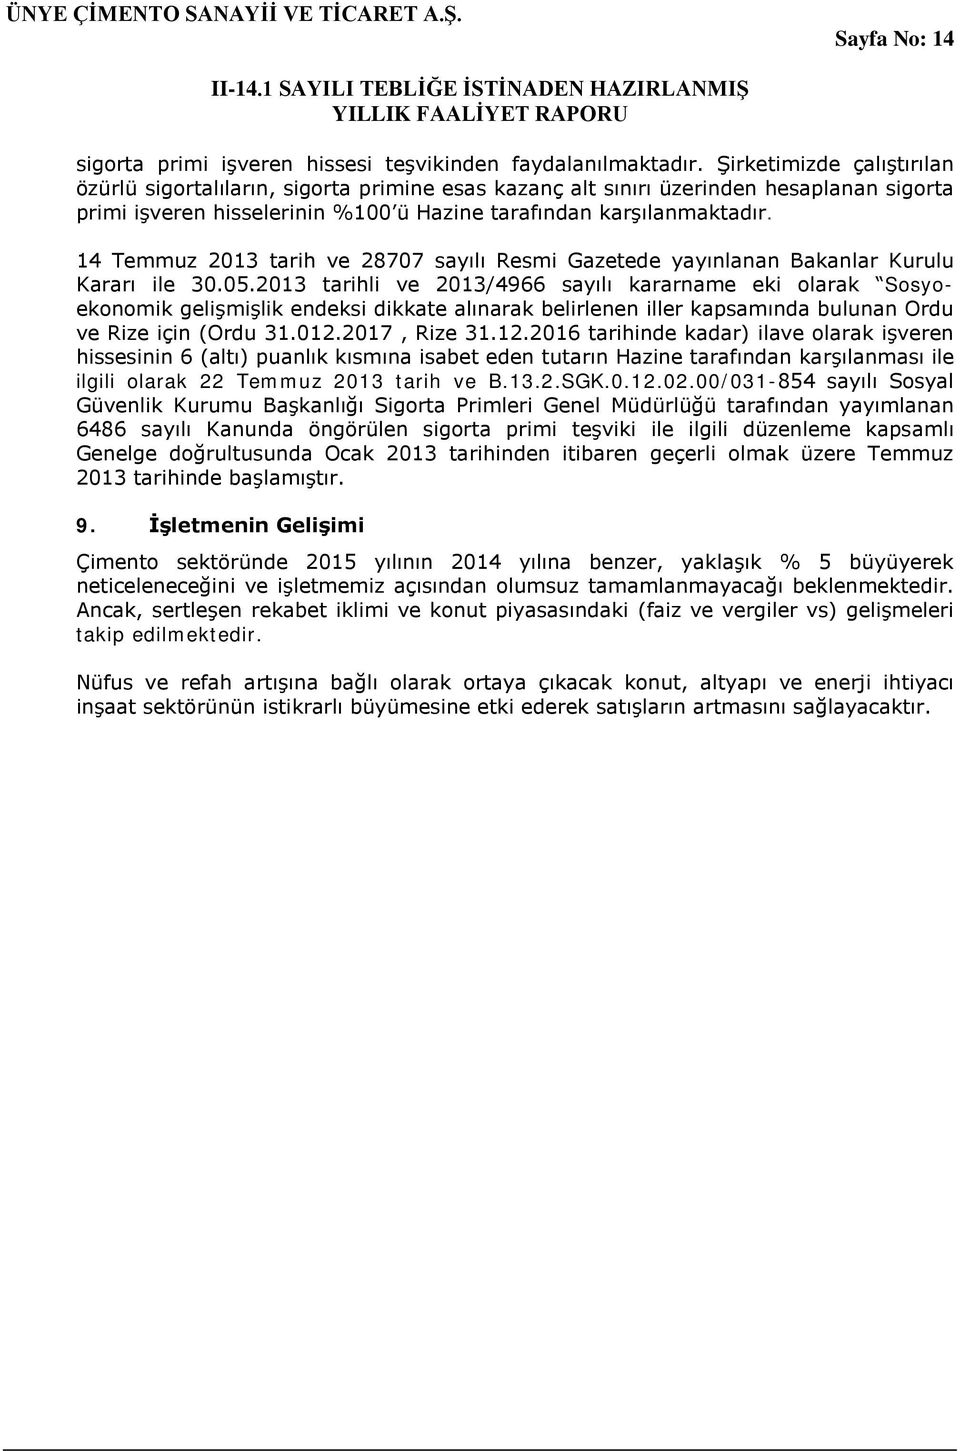 14 Temmuz 2013 tarih ve 28707 sayılı Resmi Gazetede yayınlanan Bakanlar Kurulu Kararı ile 30.05.